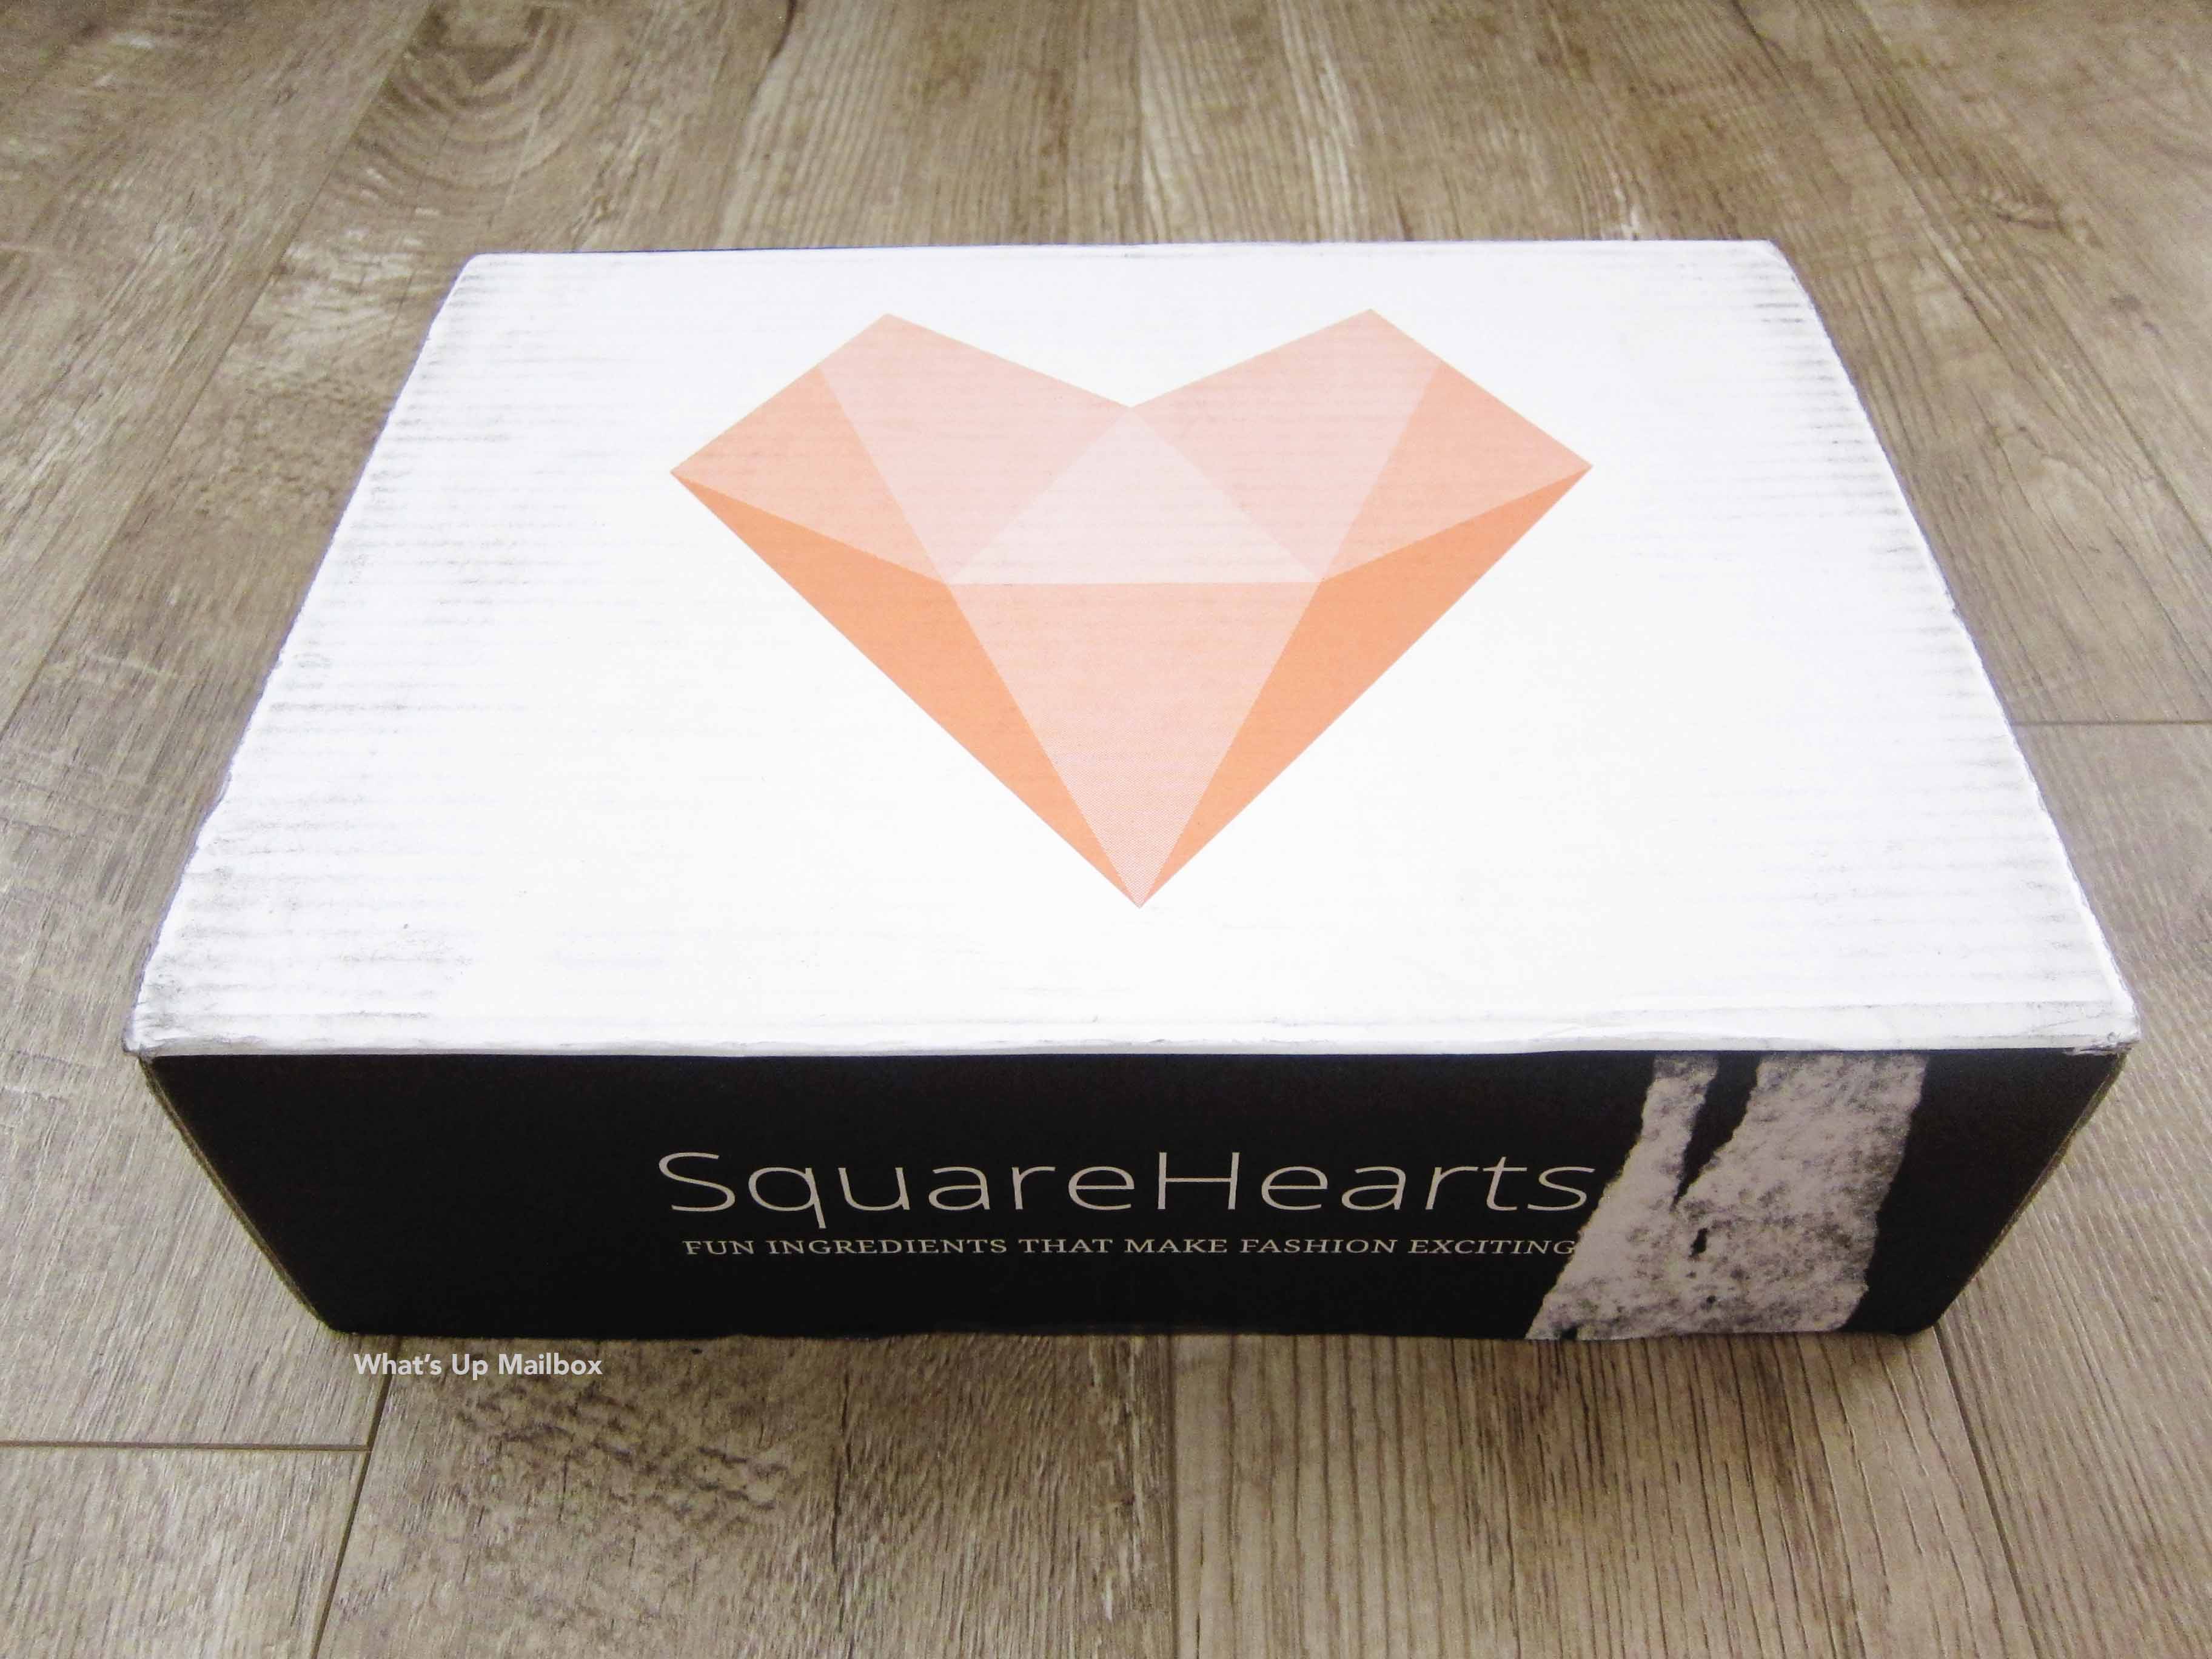 Square Hearts June 2016 Box